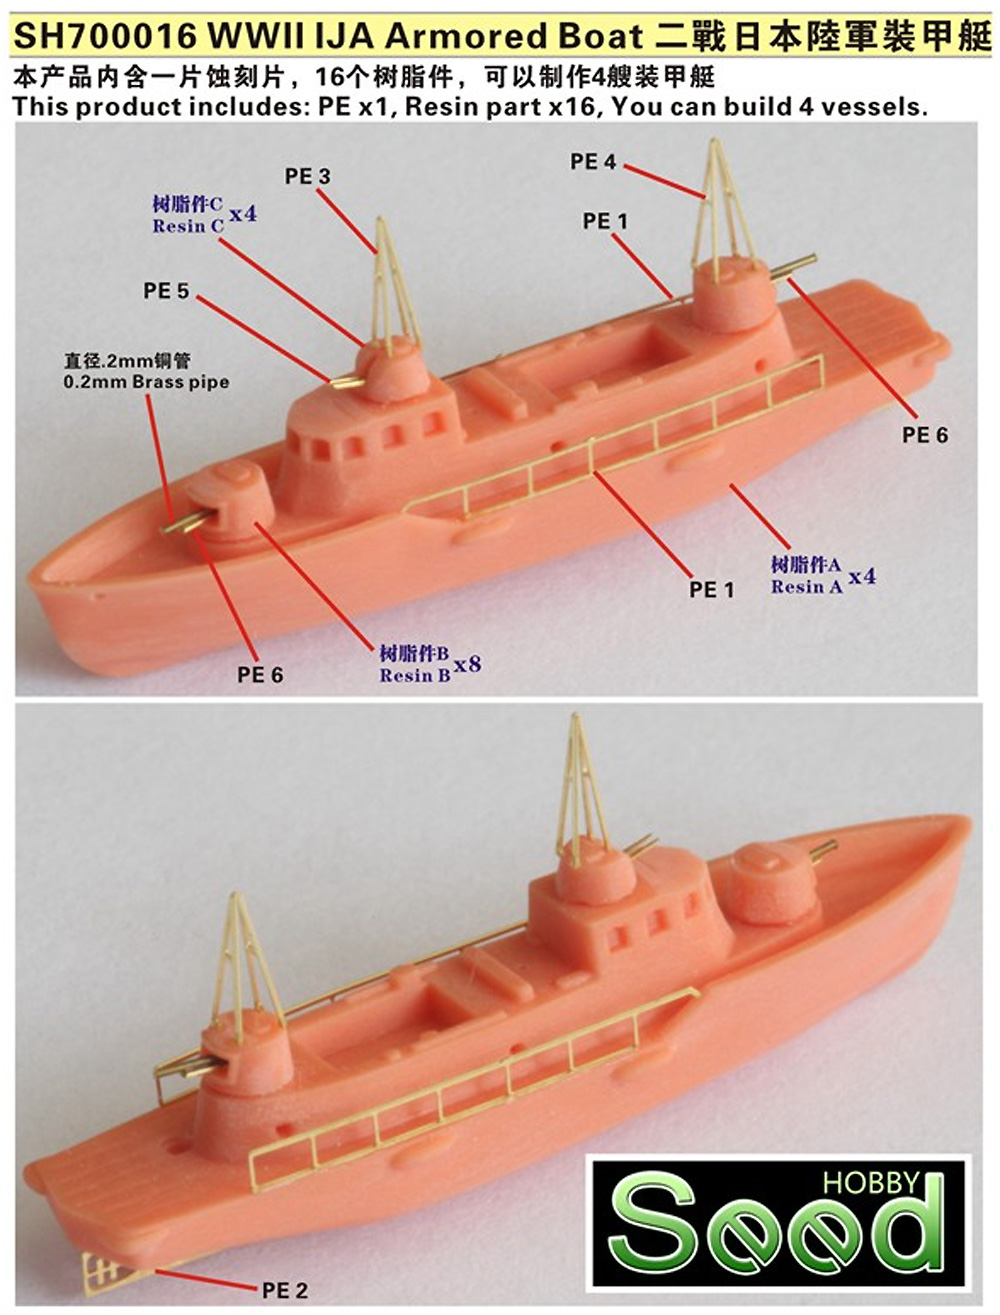 日本陸軍 装甲艇 (4隻入) レジン (Seed HOBBY 1/700 レジンキット No.SH700016) 商品画像_1